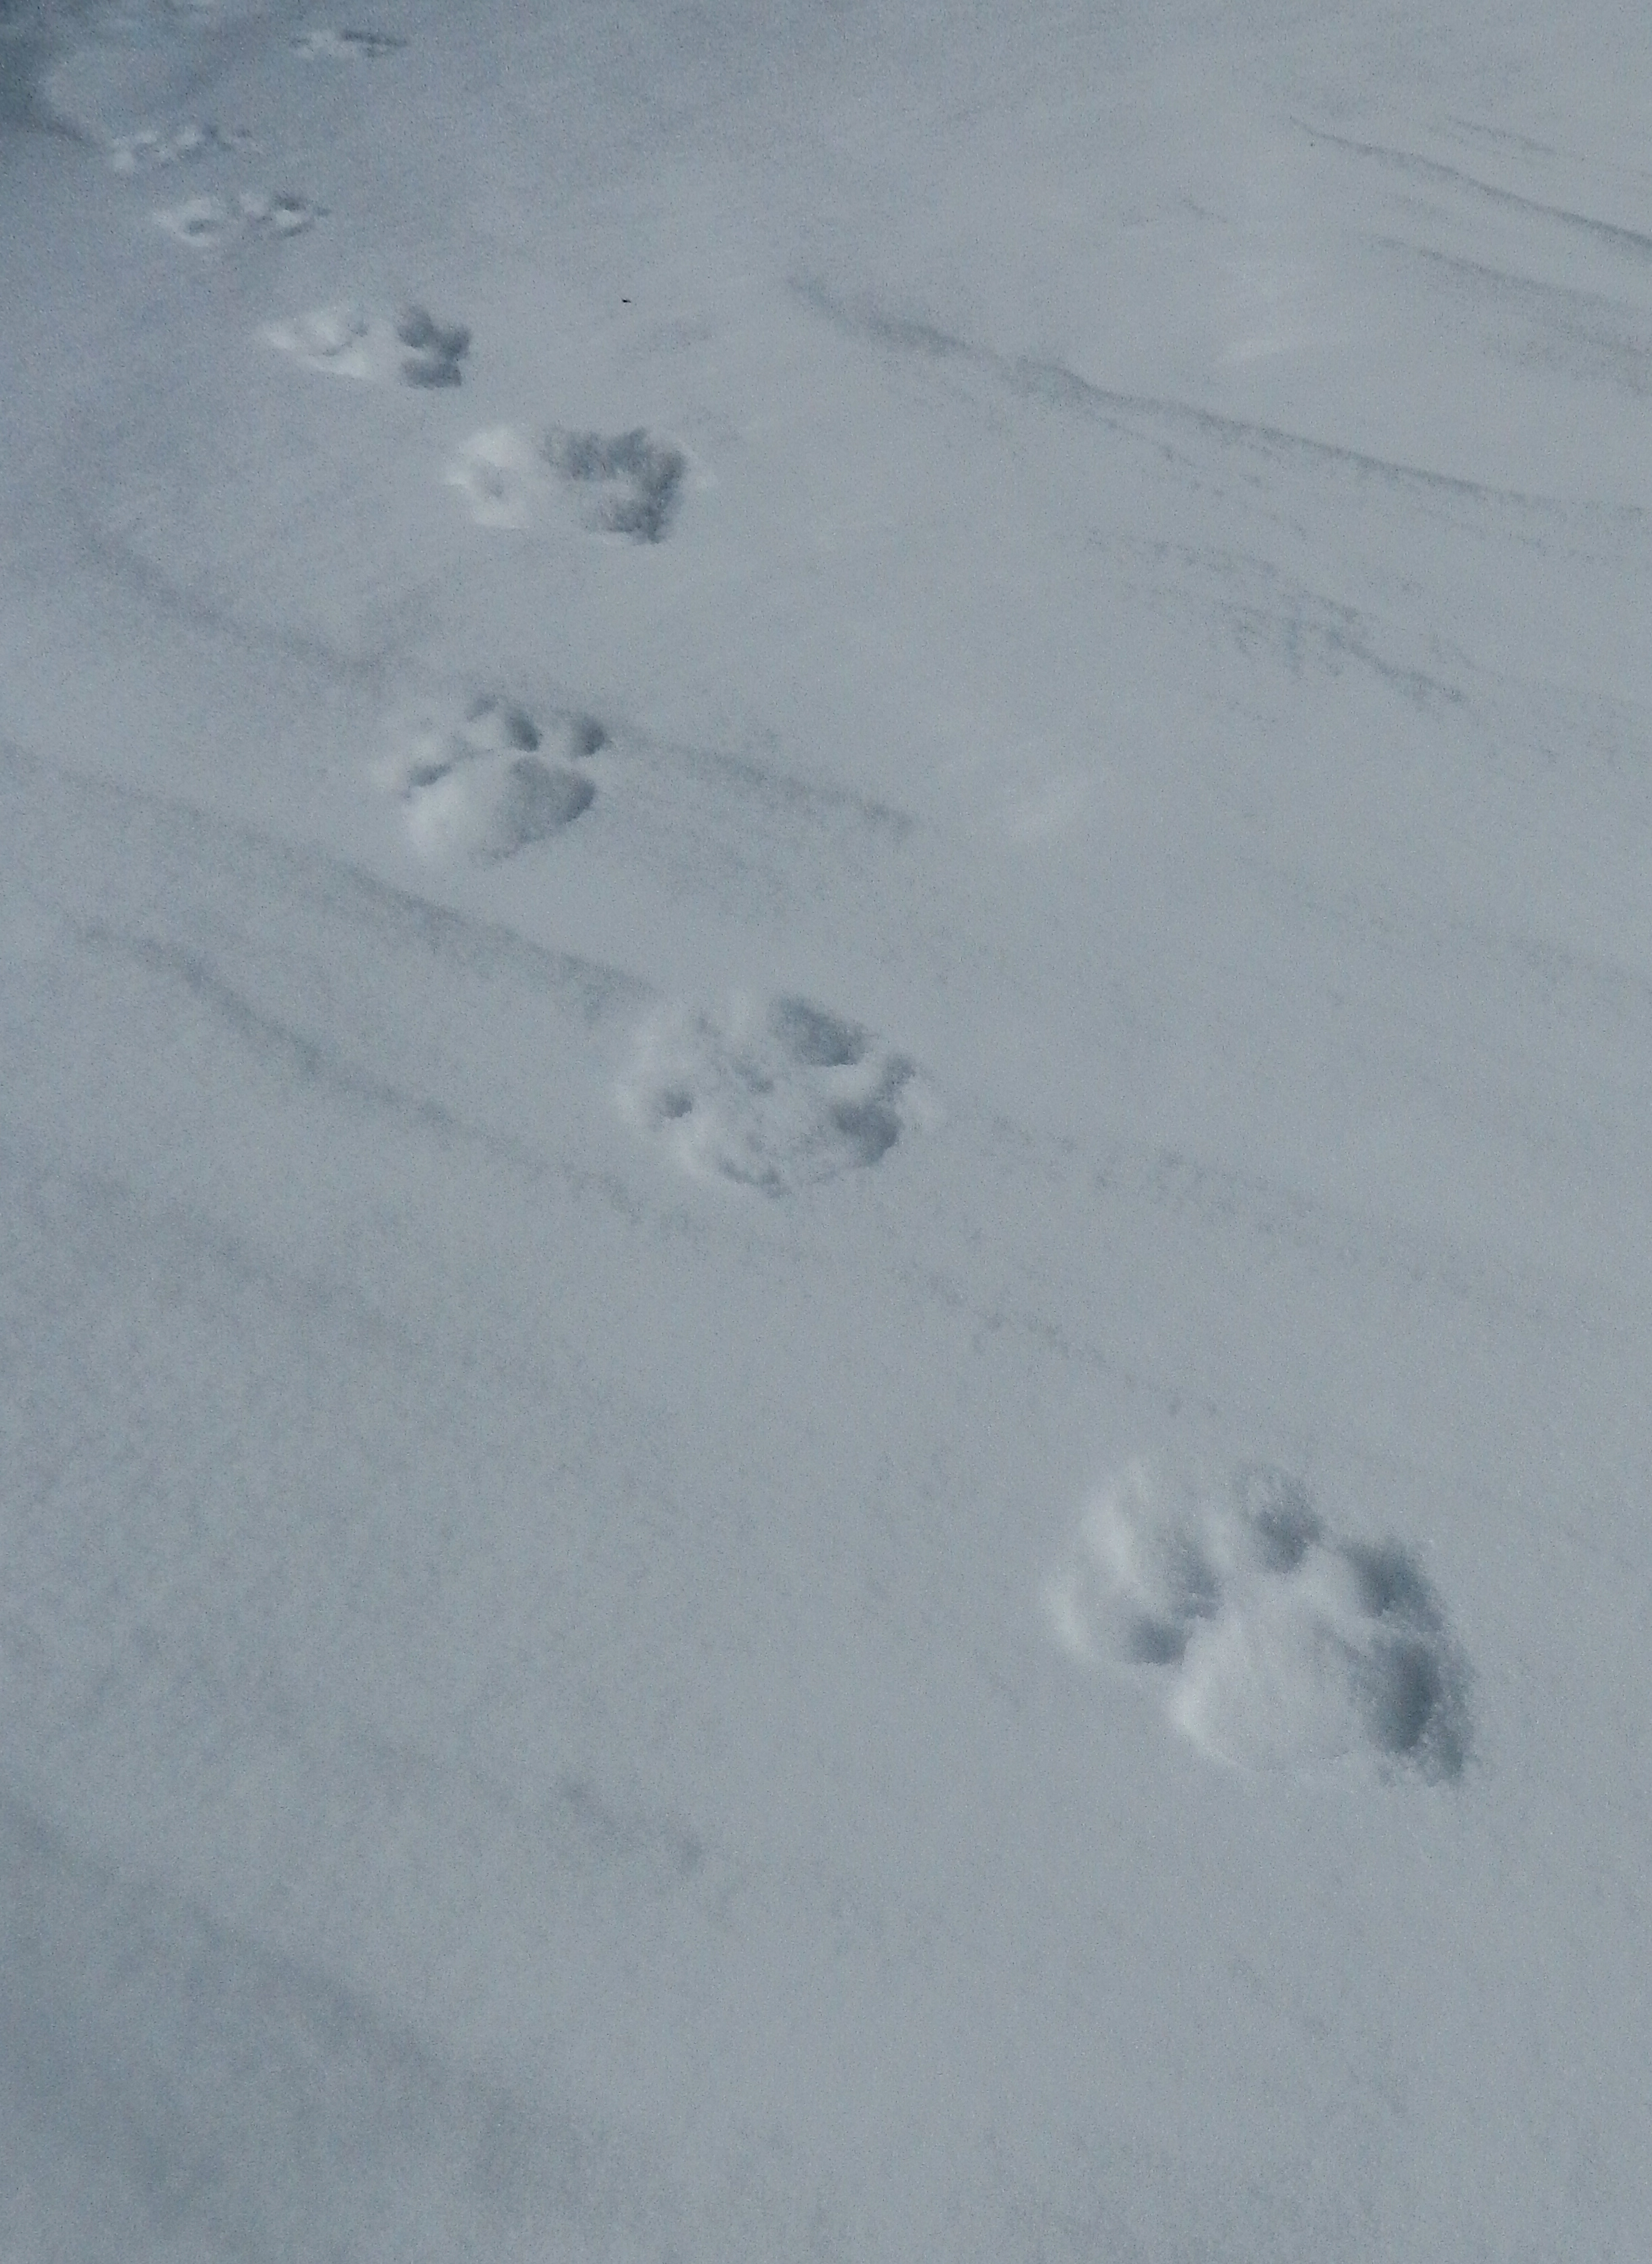 Snow Leopard tracks near high camp